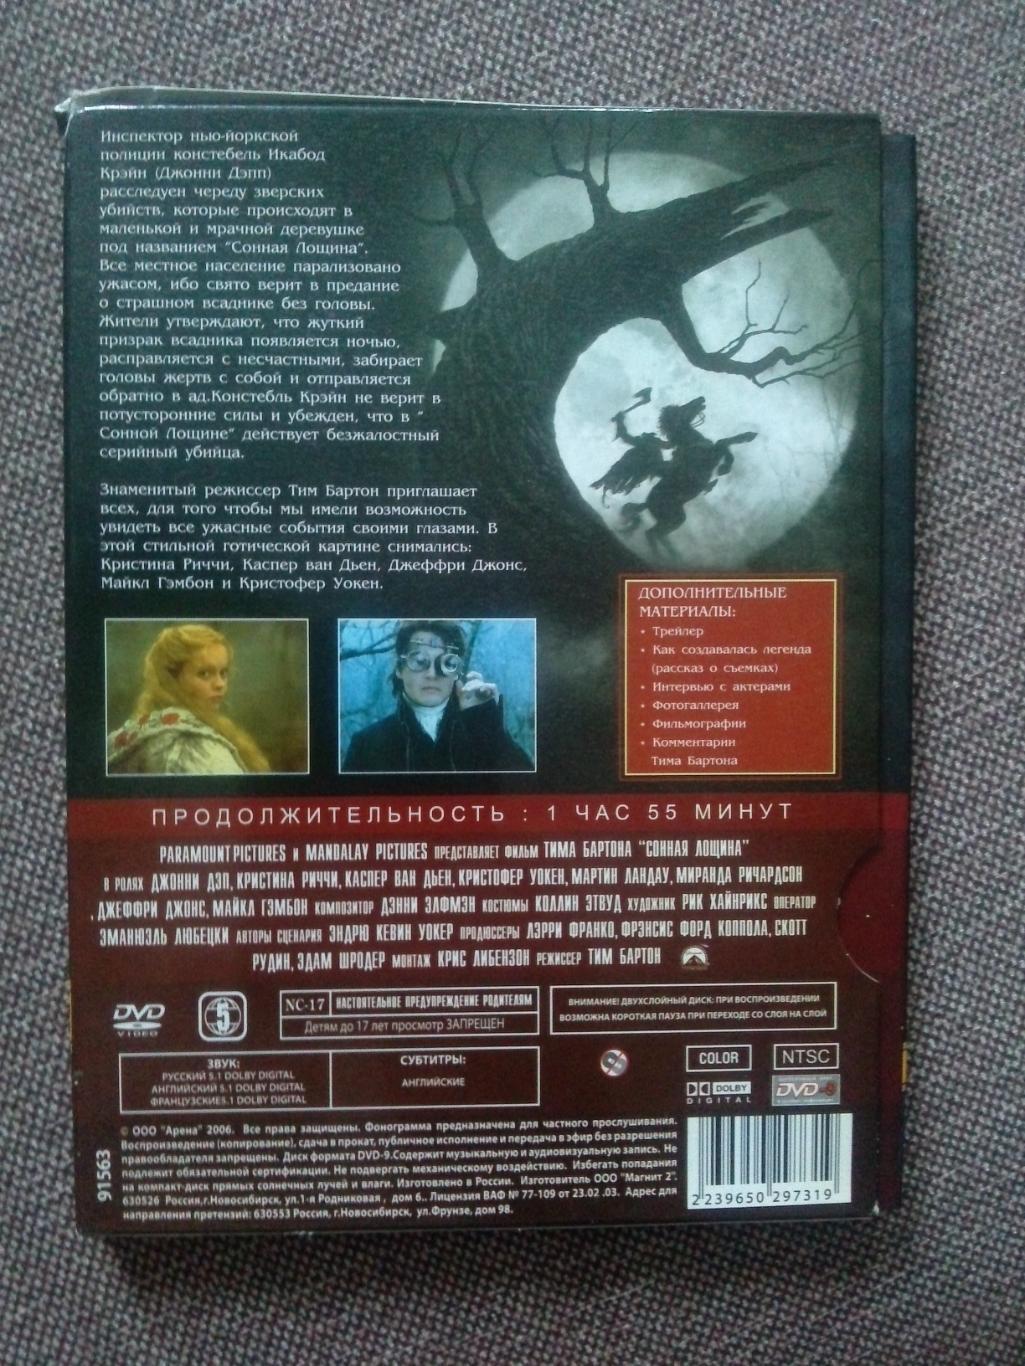 DVD диск : фильмСонная лощина(лицензия) Картонный бокс (ужасы и мистика) 1